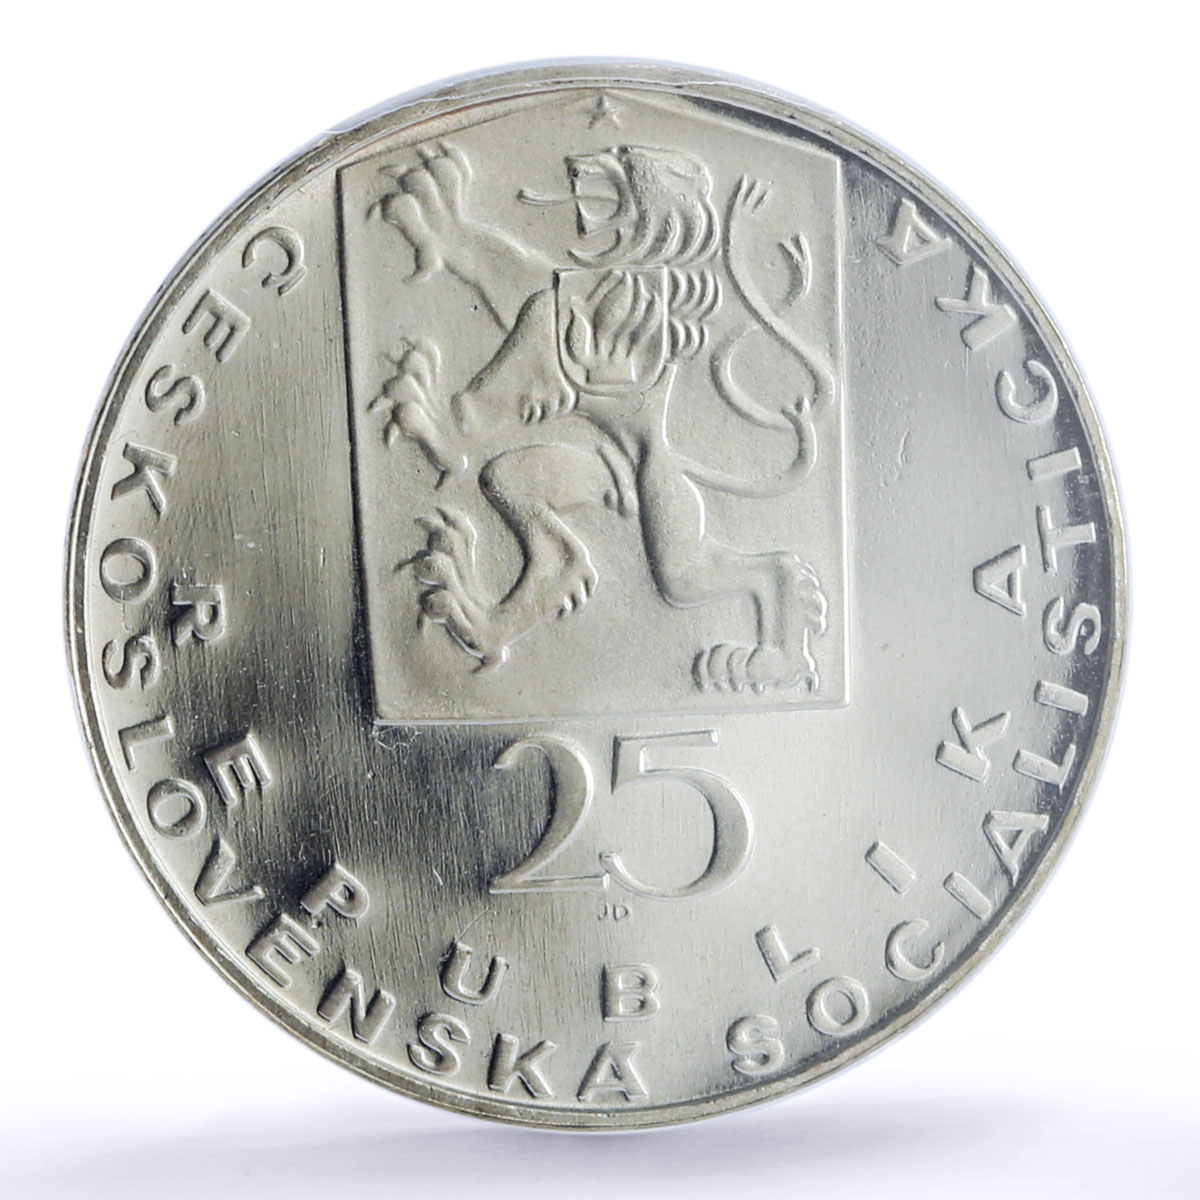 Czechoslovakia 25 korun 100 Anniversary Death Purkyne PR68 PCGS silver coin 1969